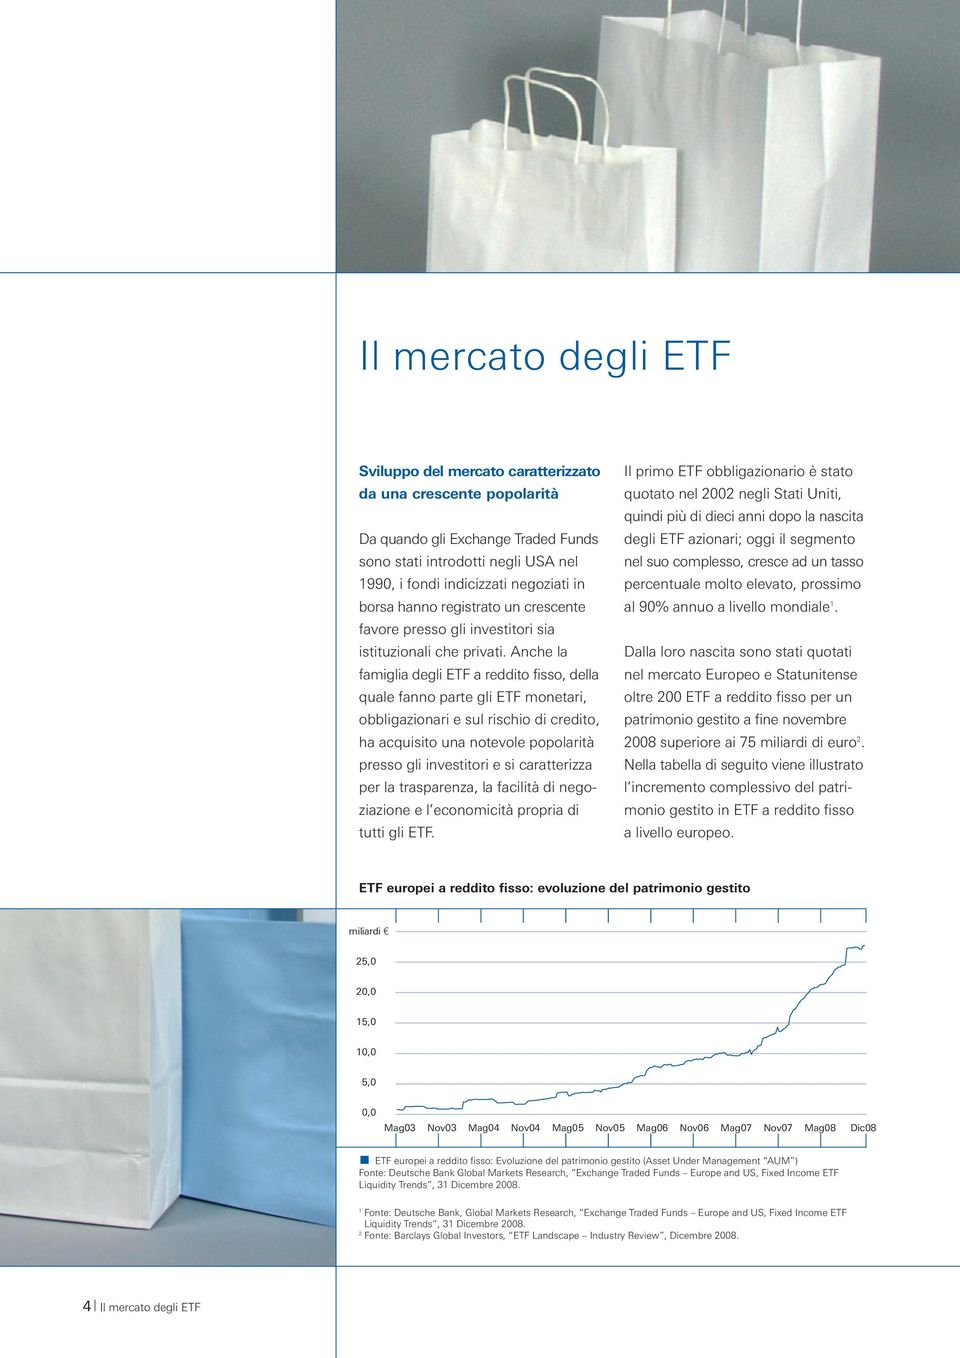 Anche la famiglia degli ETF a reddito fisso, della quale fanno parte gli ETF monetari, obbligazionari e sul rischio di credito, ha acquisito una notevole popolarità presso gli investitori e si